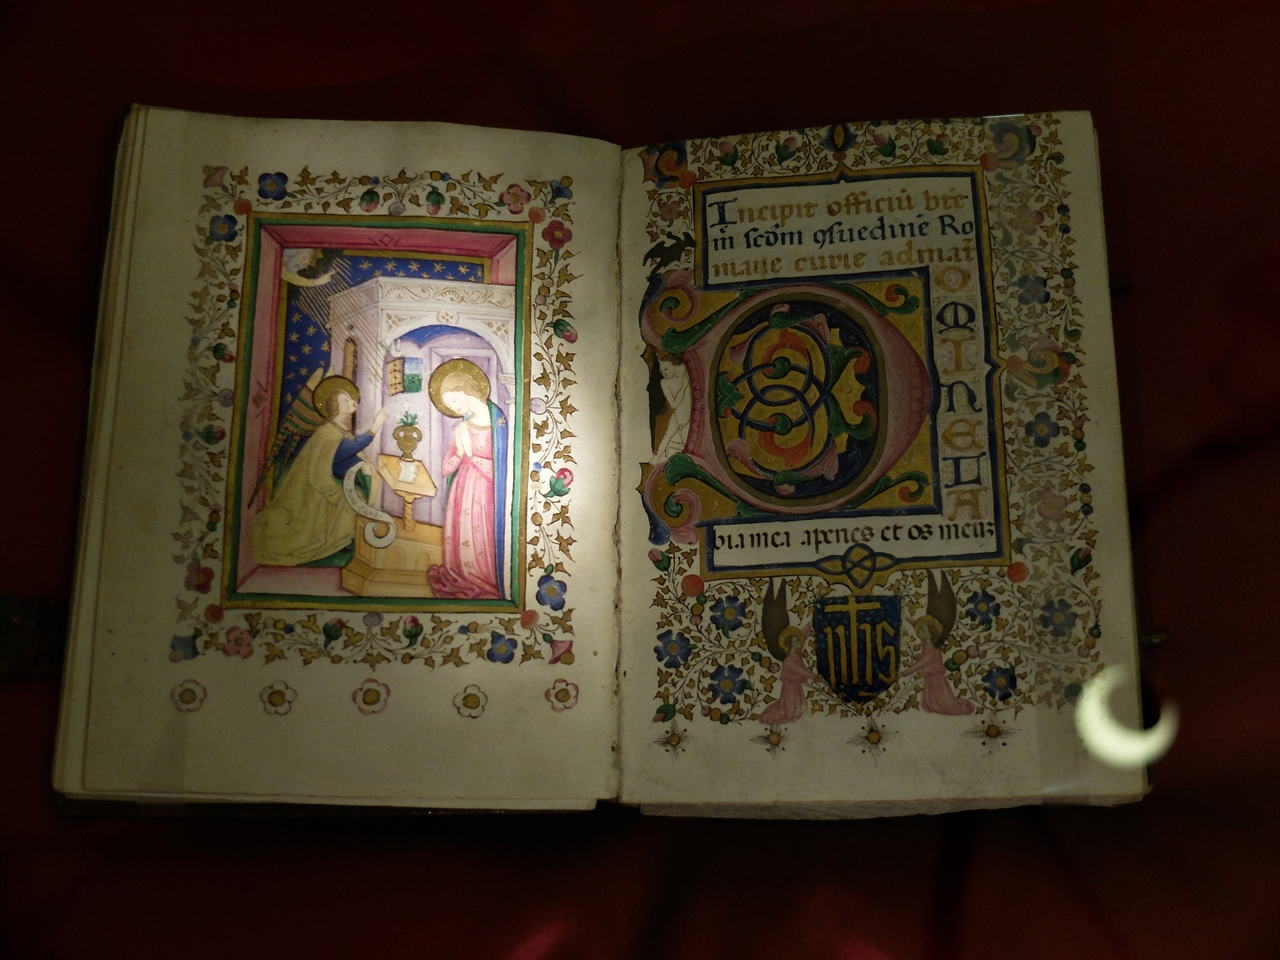  ‘트리불치아나 도서관(Biblioteca Trivulziana)’에는 섬세한 그림과 아름다운 글씨로 장식한 16세기 성경책을 비롯한 여러 고 서적들이 전시되어  있습니다. 